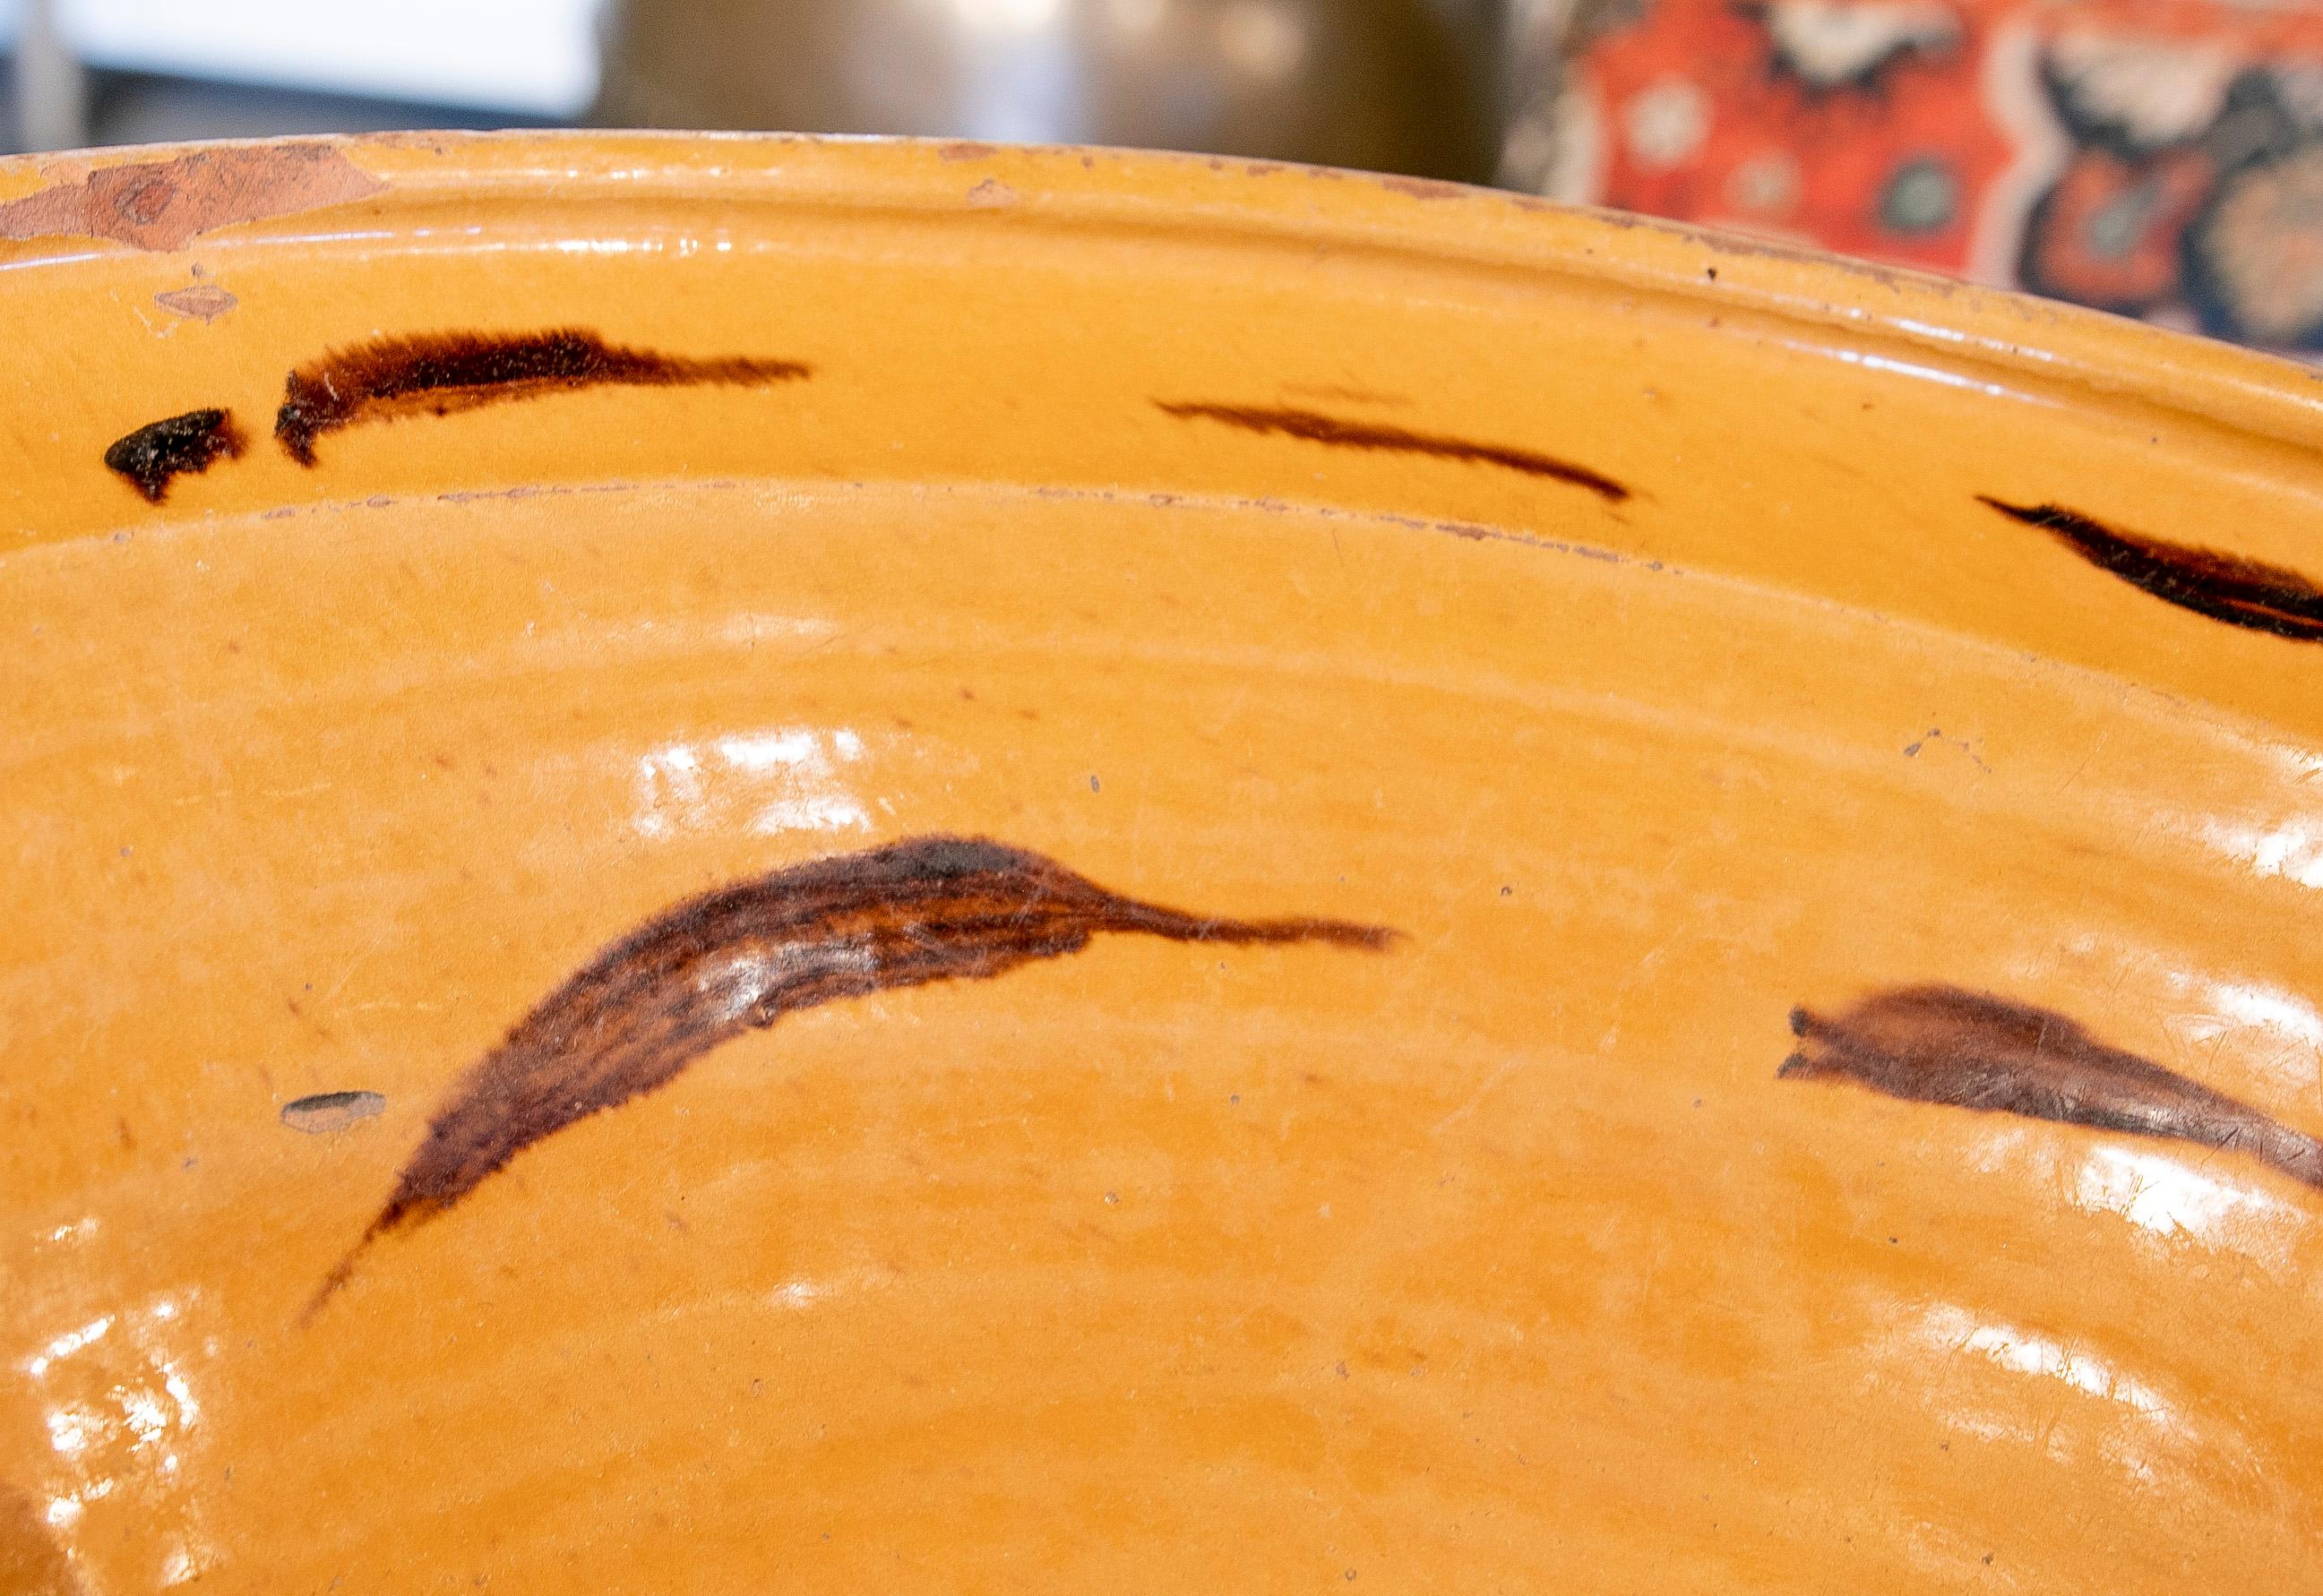 Spanish Lebrillo Small Wash-Basin of Ceramic in Brown Tones  For Sale 3